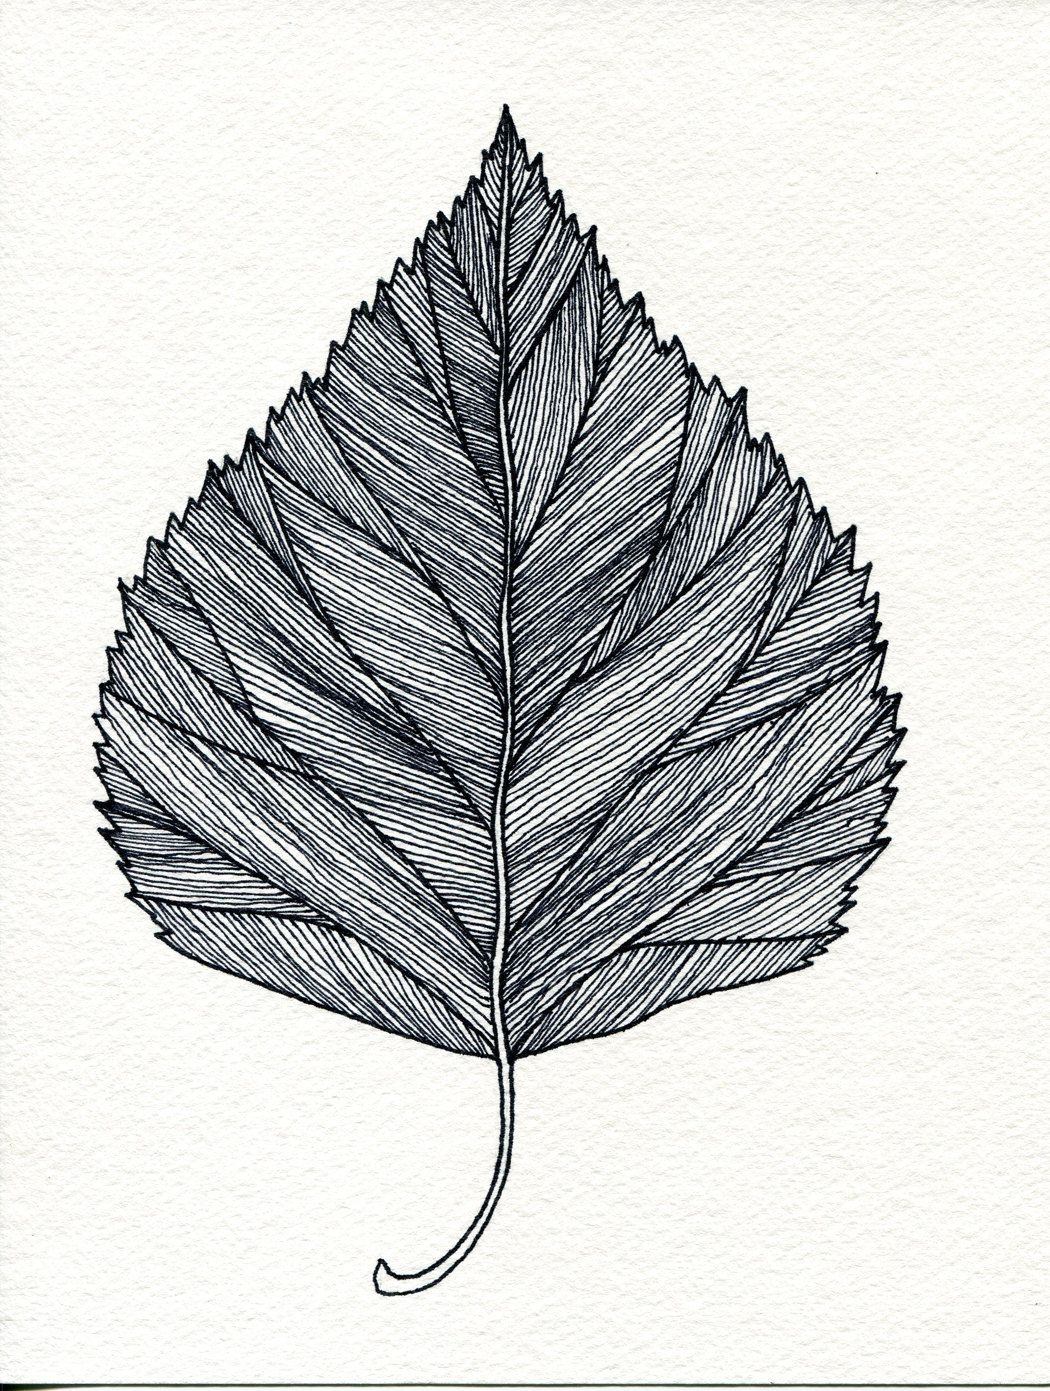 Картинка лист карандашом. Листья карандашом. Стилизованный лист дерева. Наброски листьев. Листочки карандашом.